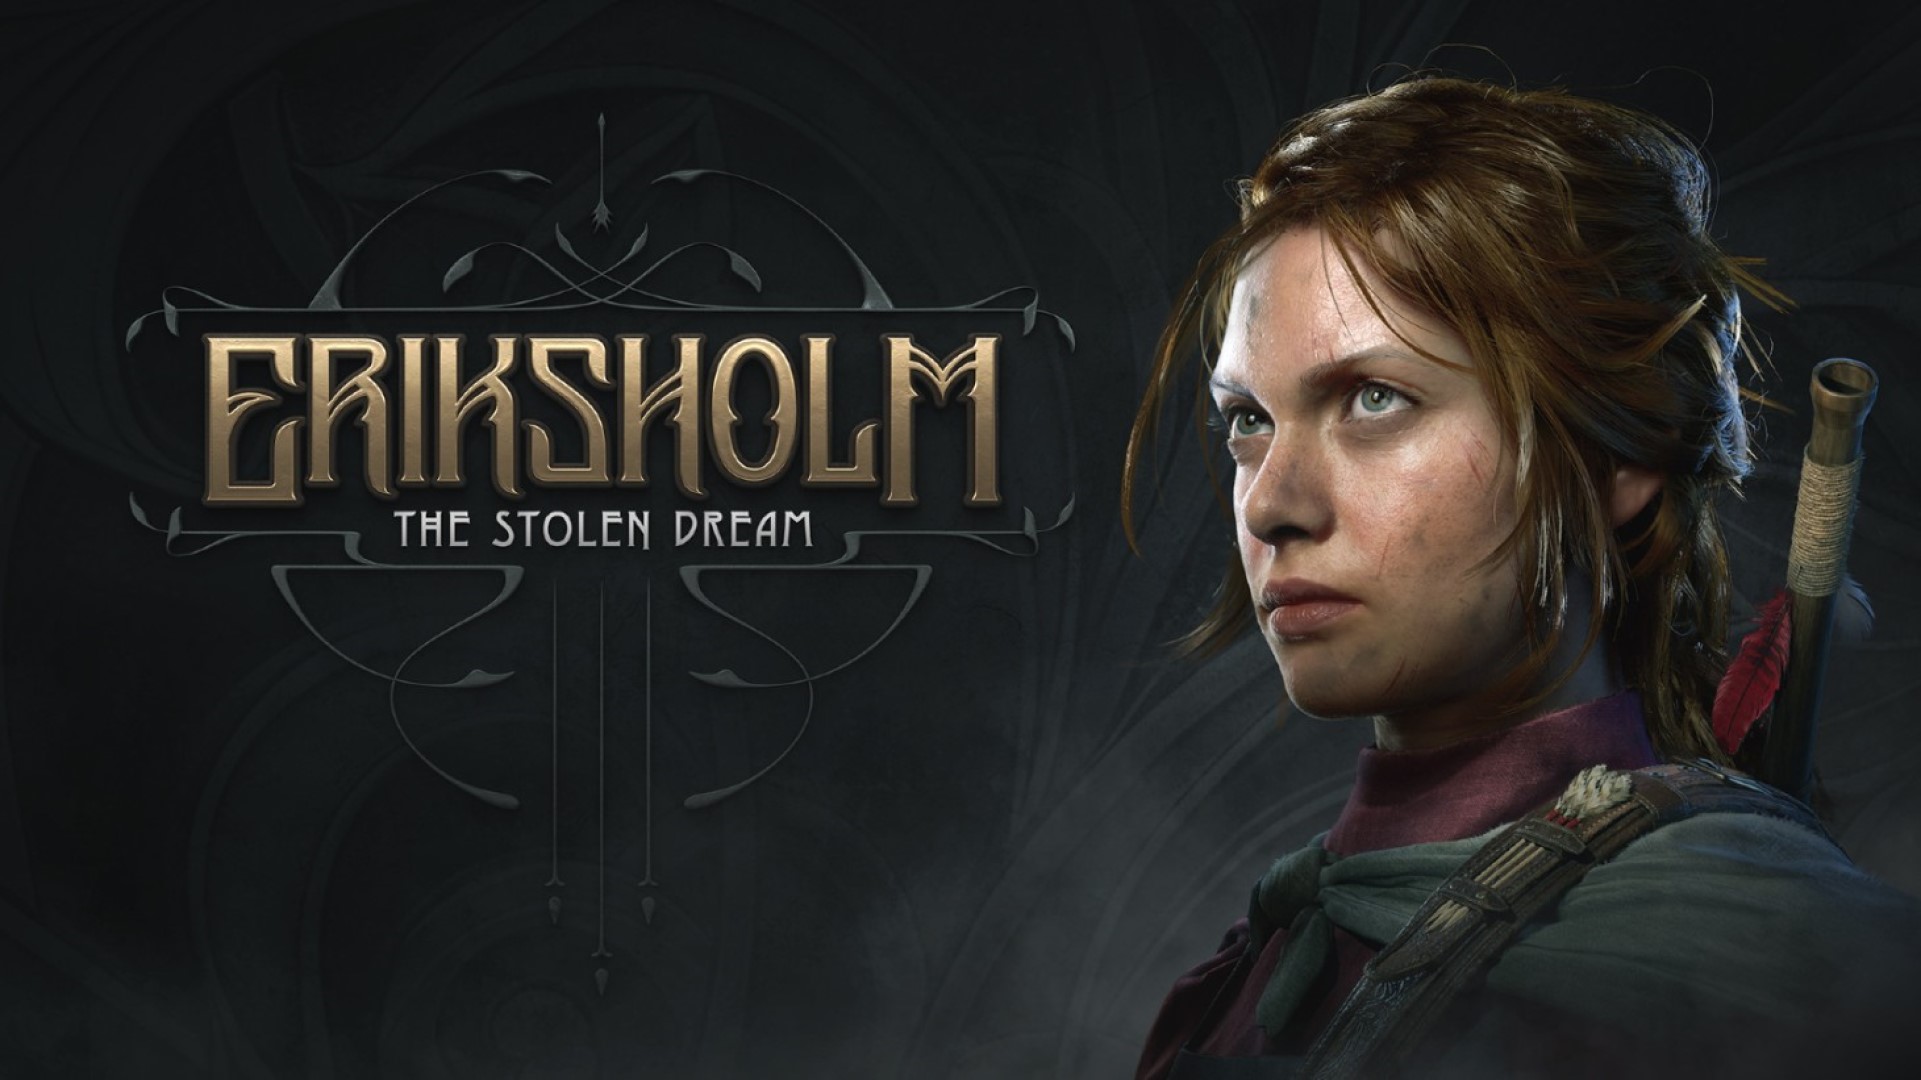 Eriksholm: The Stolen Dream — повествовательная тактическая стелс-игра с тремя главными героями